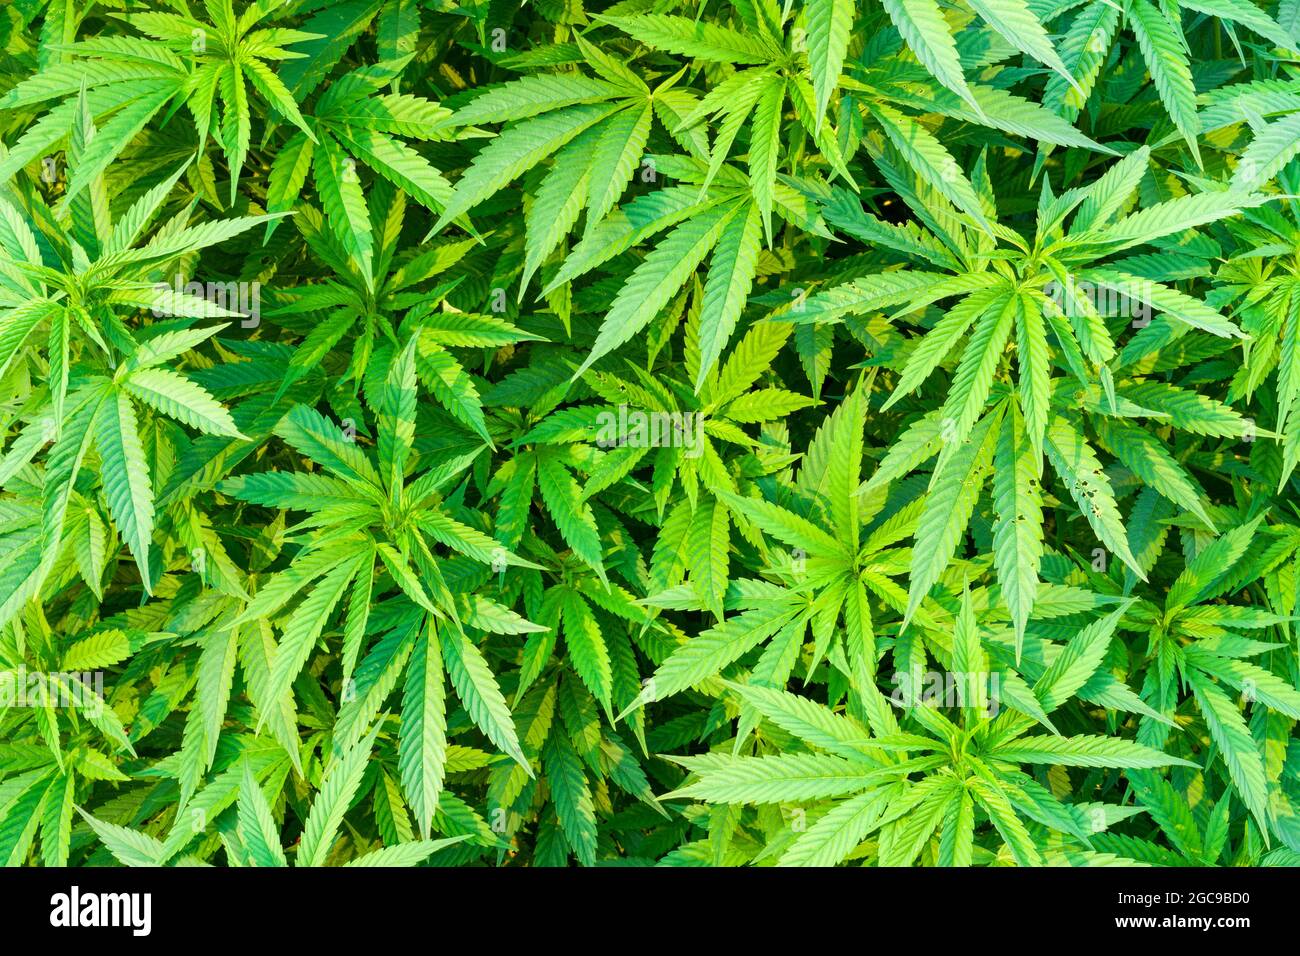 Foliage of a marijuana (Cannabis sativa) plant. Stock Photo